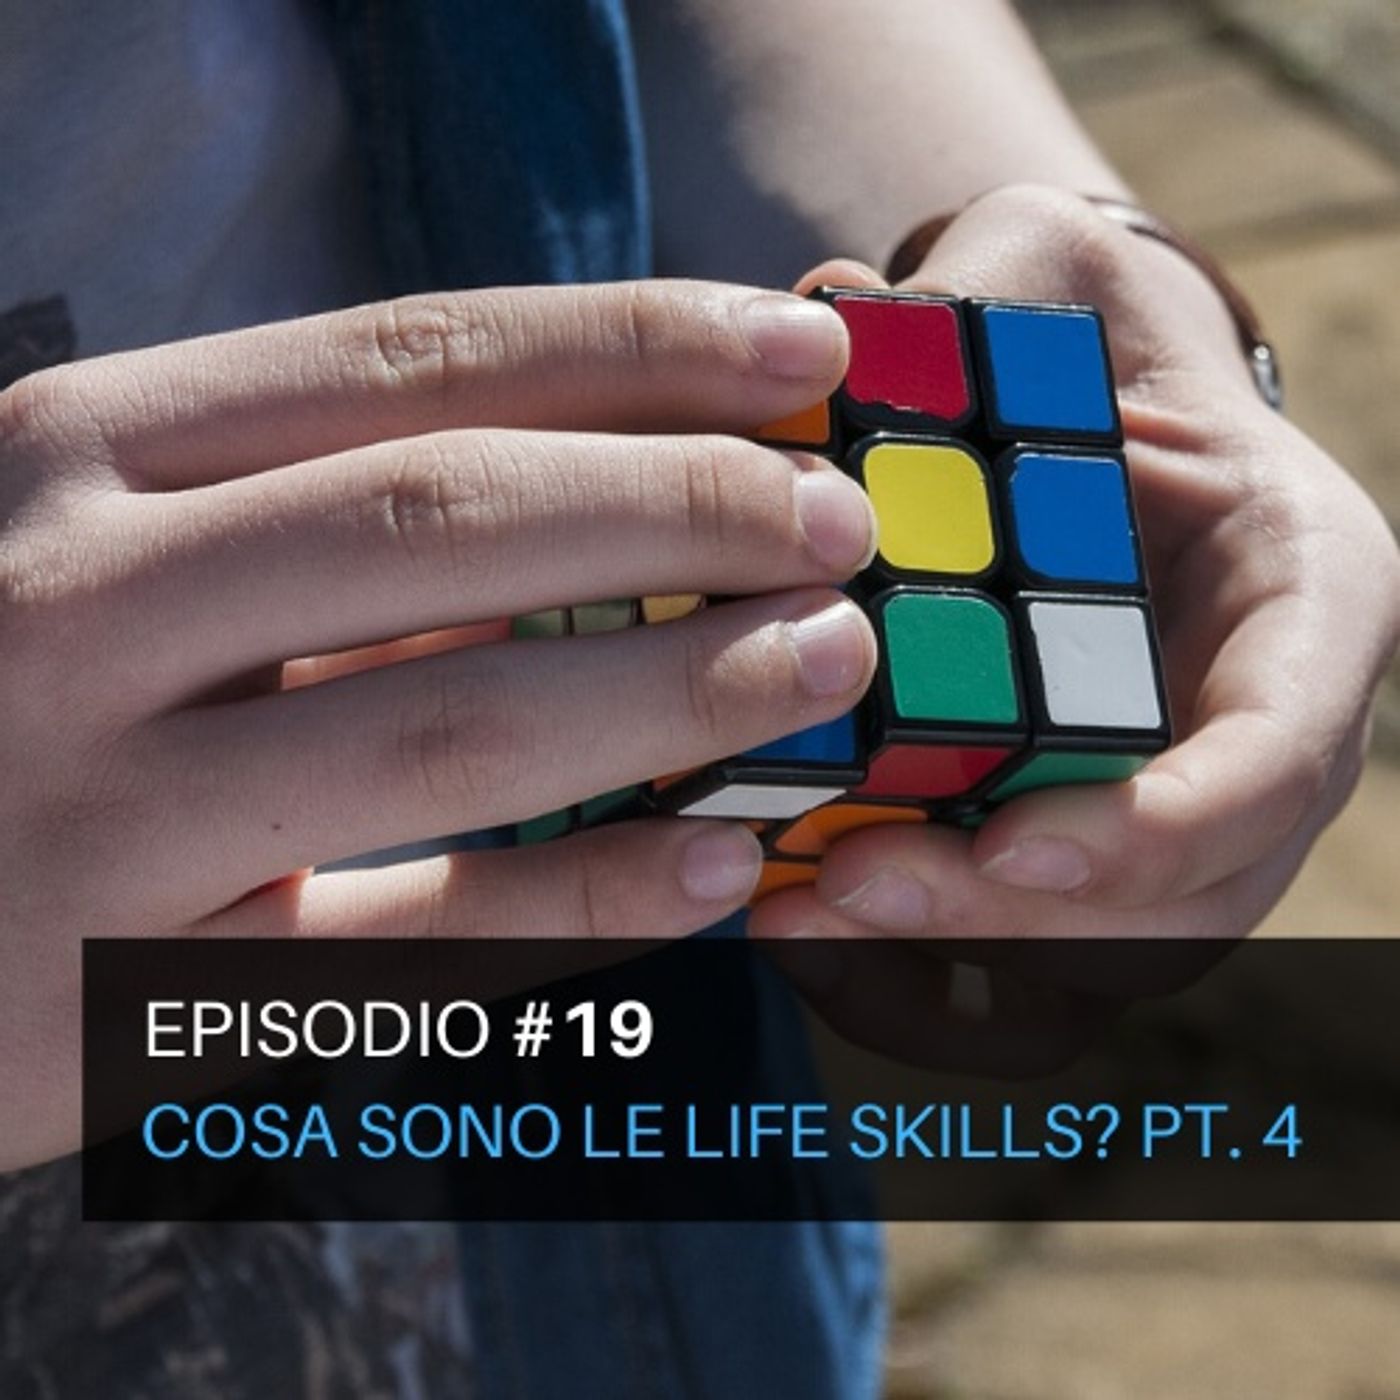 Episodio#19 - Cosa sono le life skills? Pt. 4